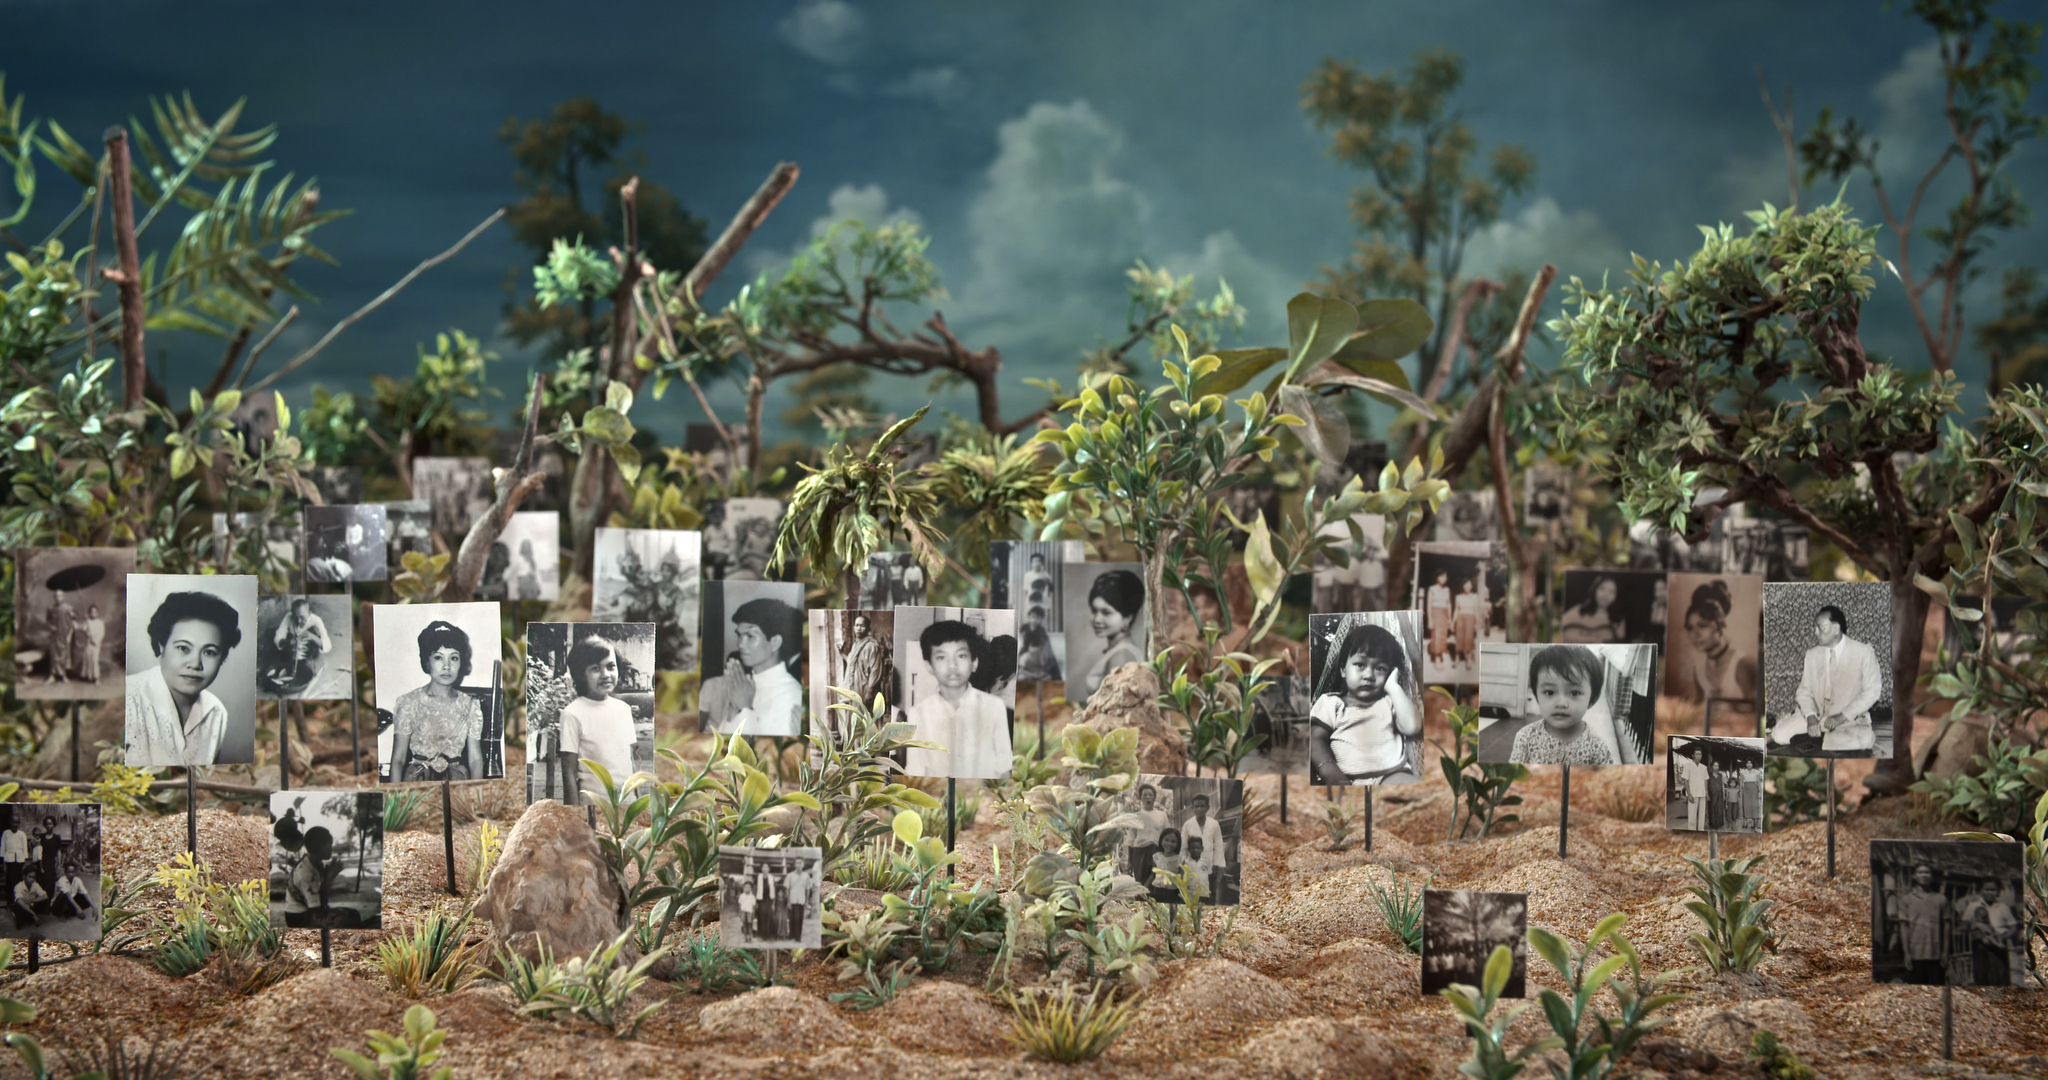 Les tombeaux sans noms, de Rithy Panh © ARTE France  Anupheap Production